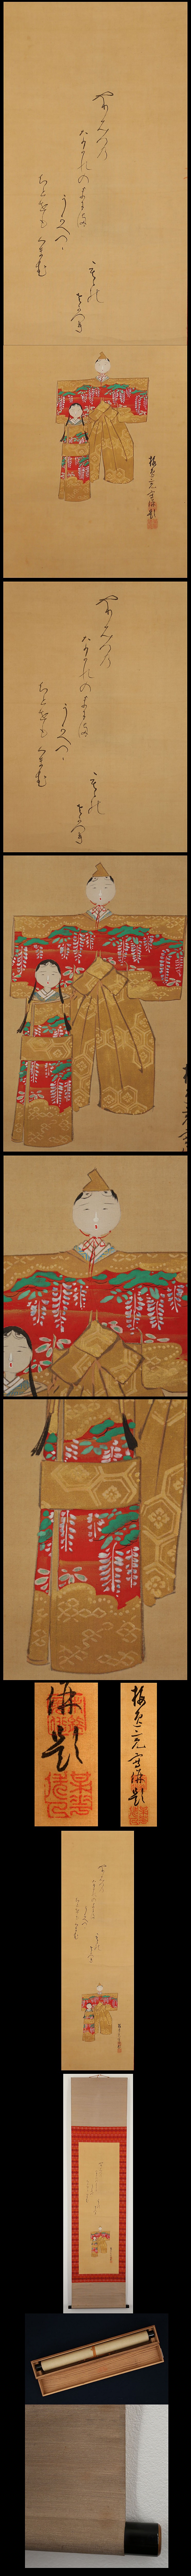 山本梅逸 紙雛図 | 古美術品・中国書画の買取・査定や掛軸の通販の